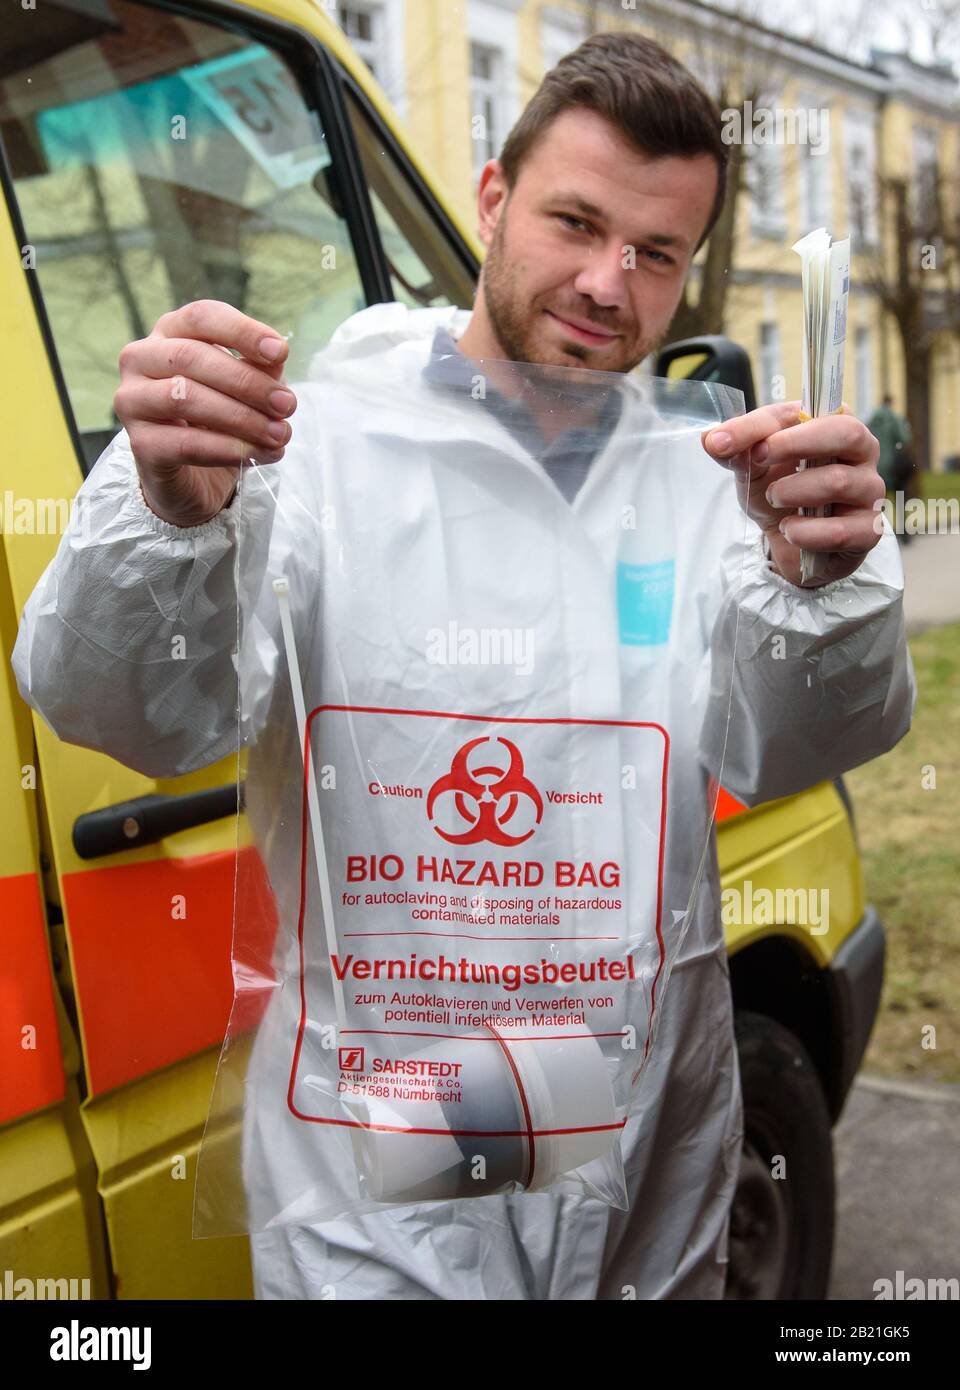 RIGA, LETONIA. 28 de febrero de 2020. El personal médico del Servicio médico de emergencia del Estado de Letonia muestra una bolsa de peligro biológico para las pruebas del virus de la corona. Foto de stock